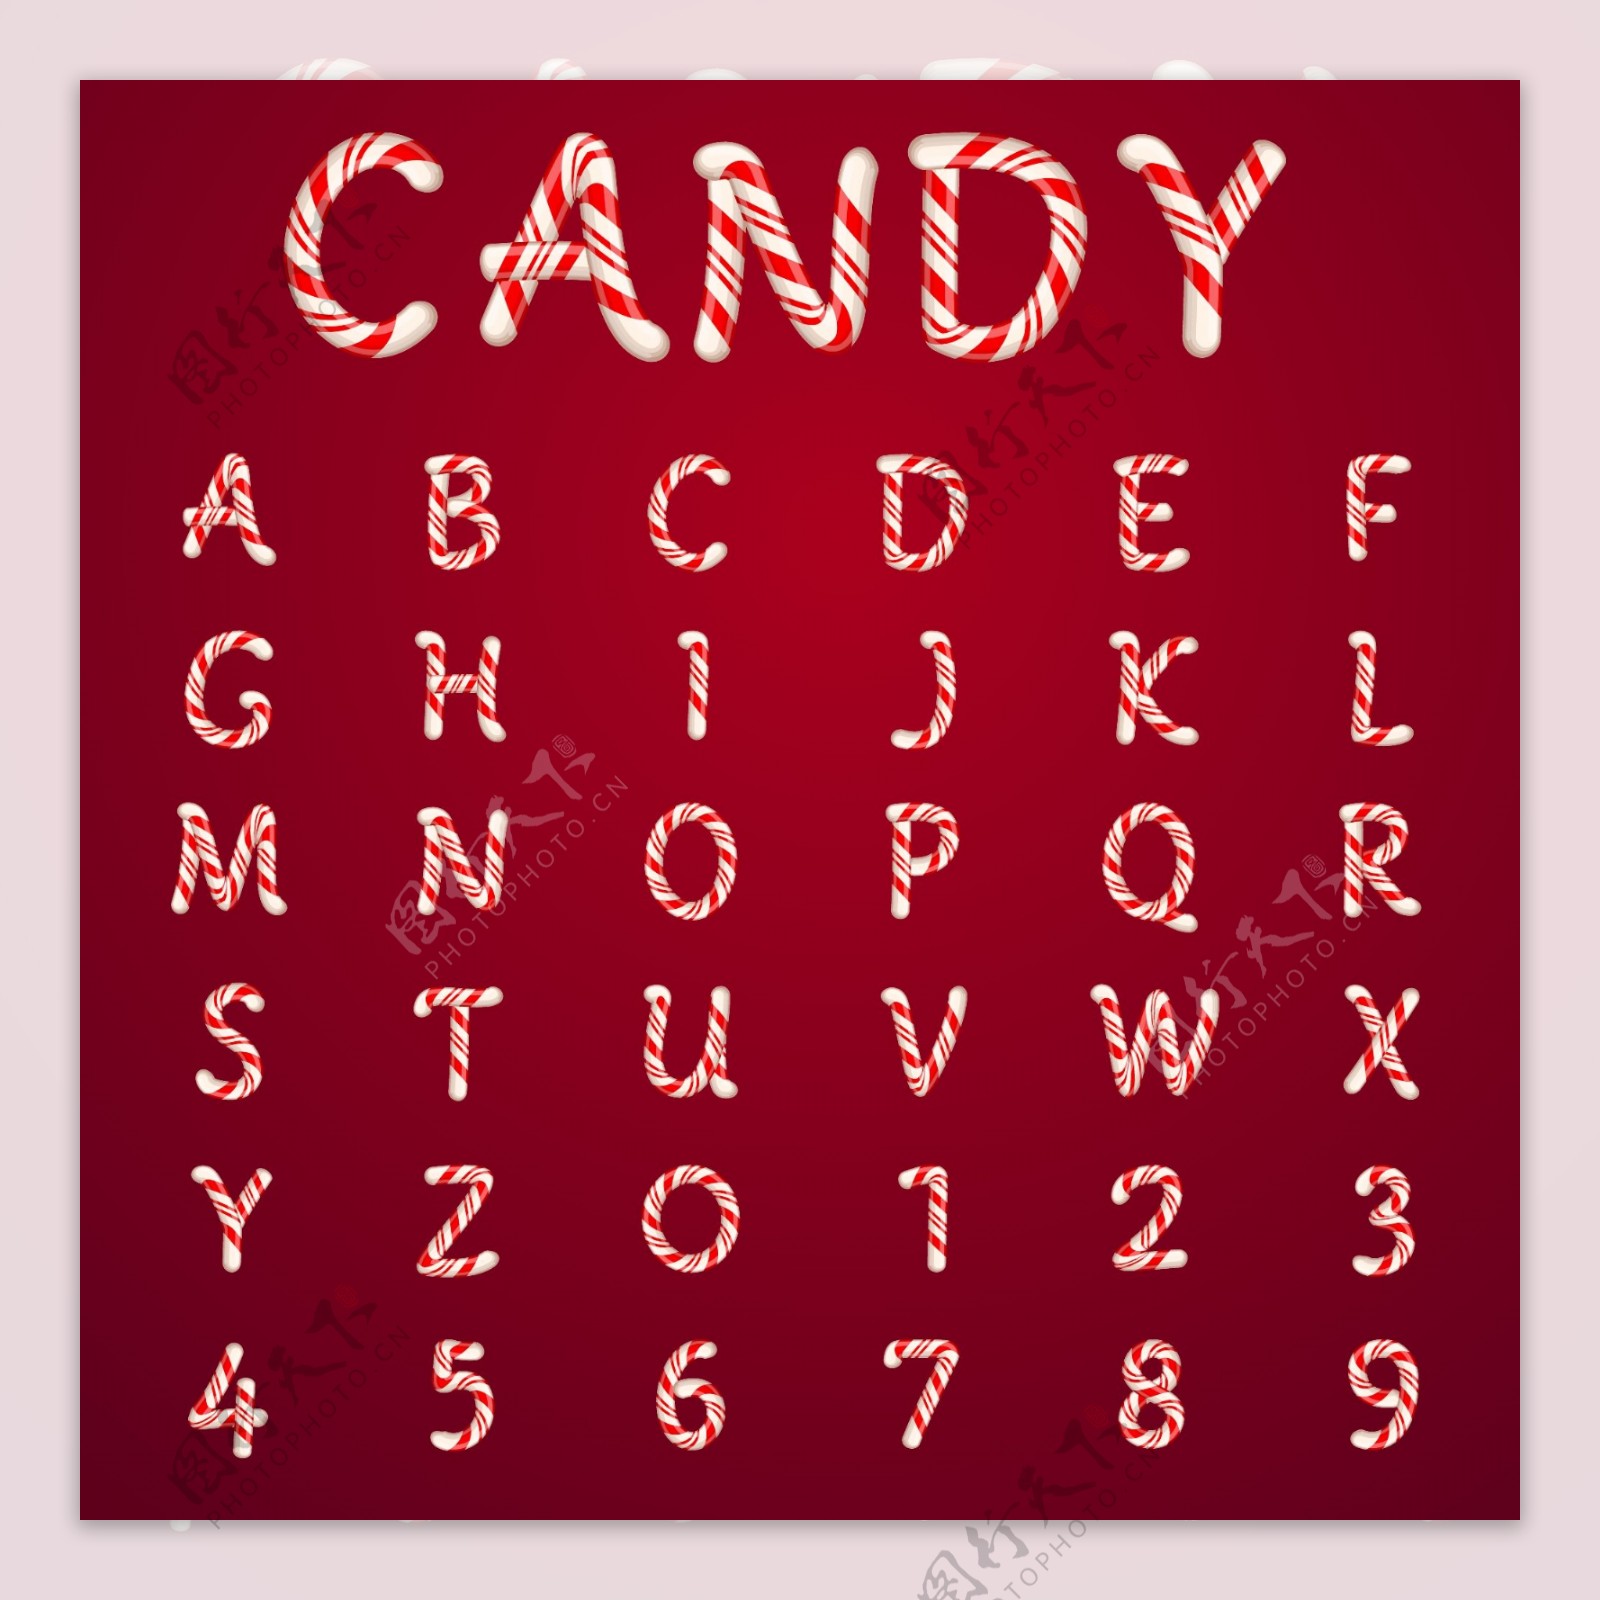 36个创意糖果字母和数字矢量素材